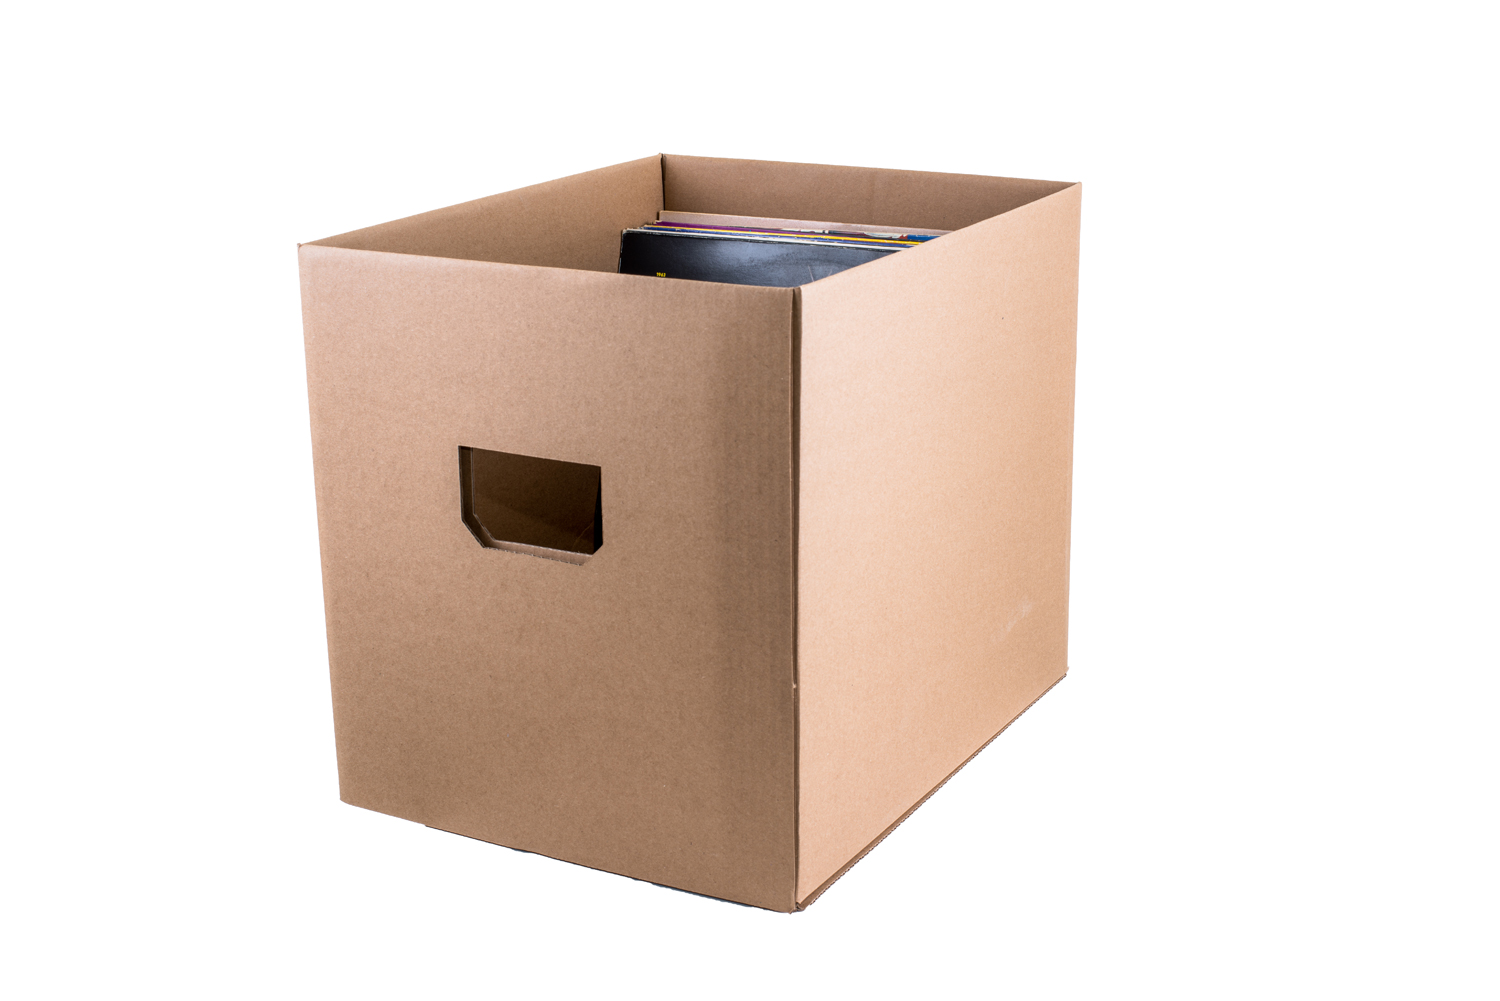 mehr für Ordner Aufbewahrungsbox Box Transport, vieles Aufbewahrungs und 7EVEN und Stapel Umzug, Schallplatten, z.b. Karton